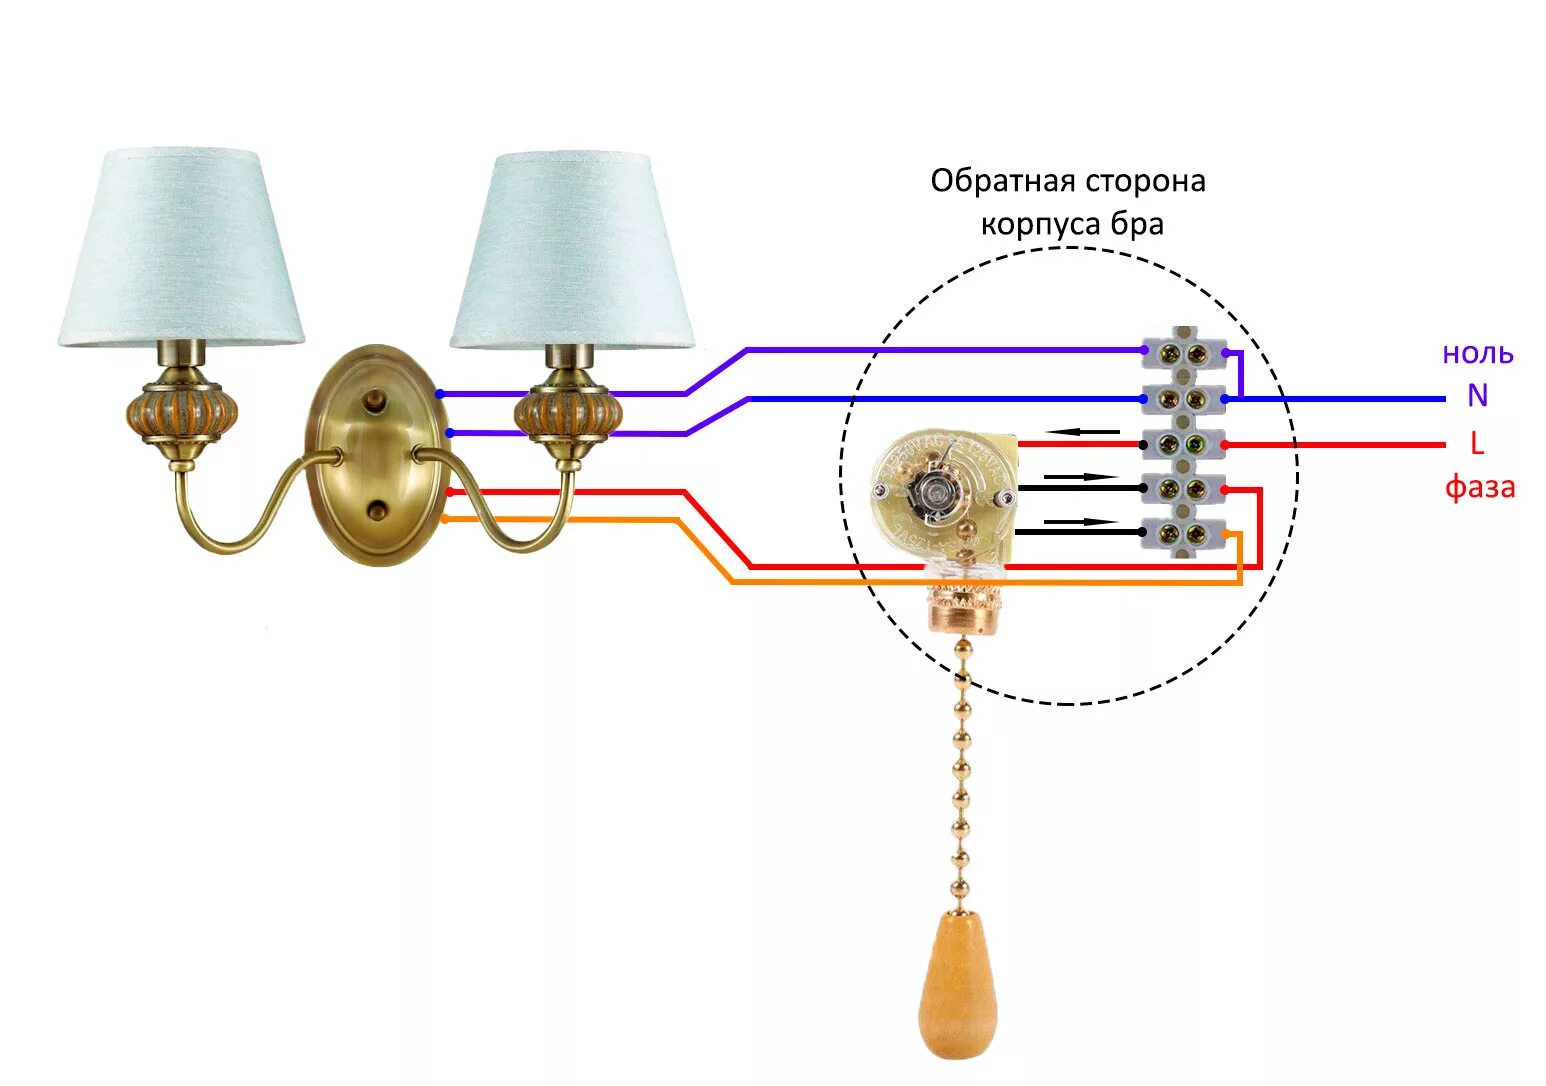 Проводка освещения. Схема подключения 3 лампочки с одним выключателем. Схема подключения светильника бра. Схема подключения светильника бра с 2 лампочками. Схема подключения выключателя 2 провода.